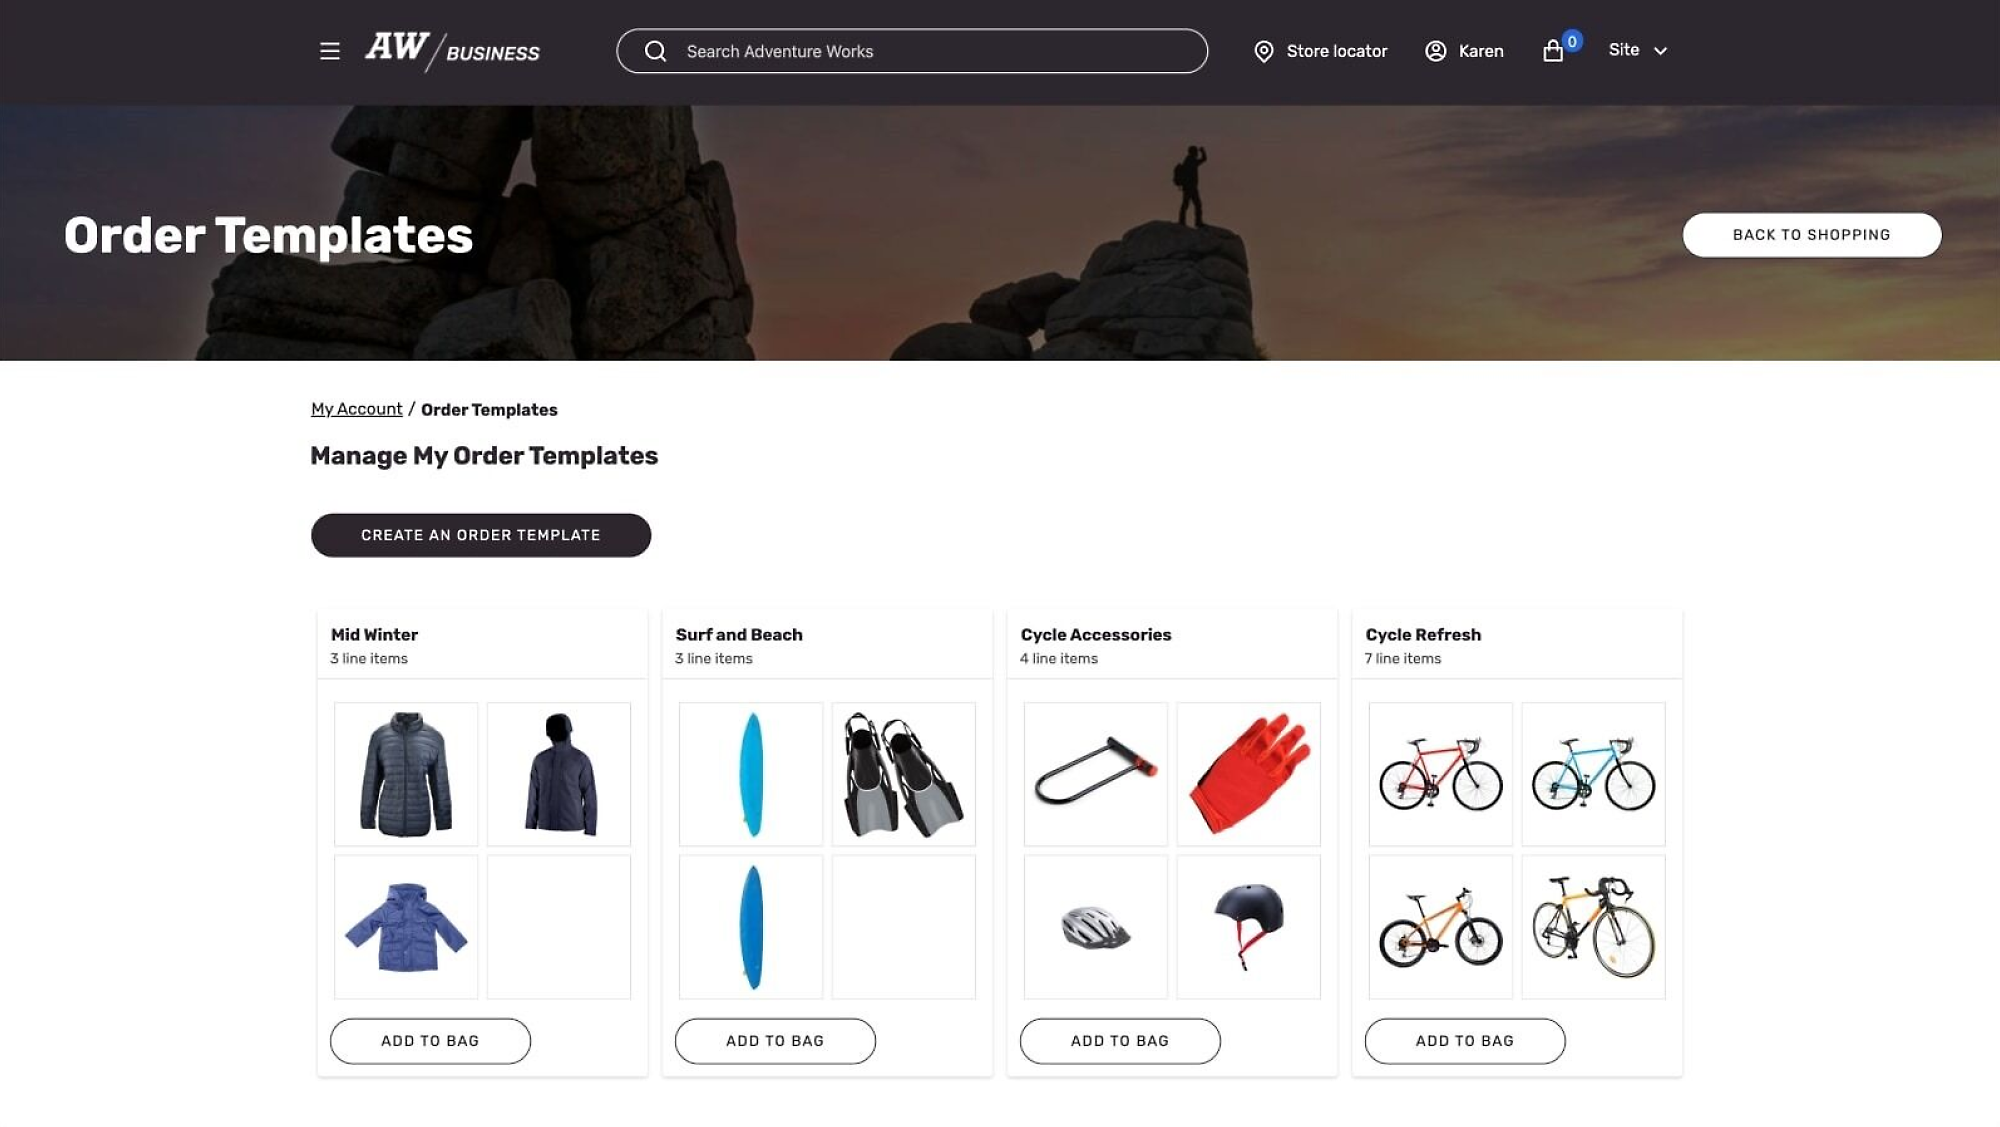 Adventure Works 頁面顯示訂單範本、購物選項，以及 [加入購物袋] 按鈕